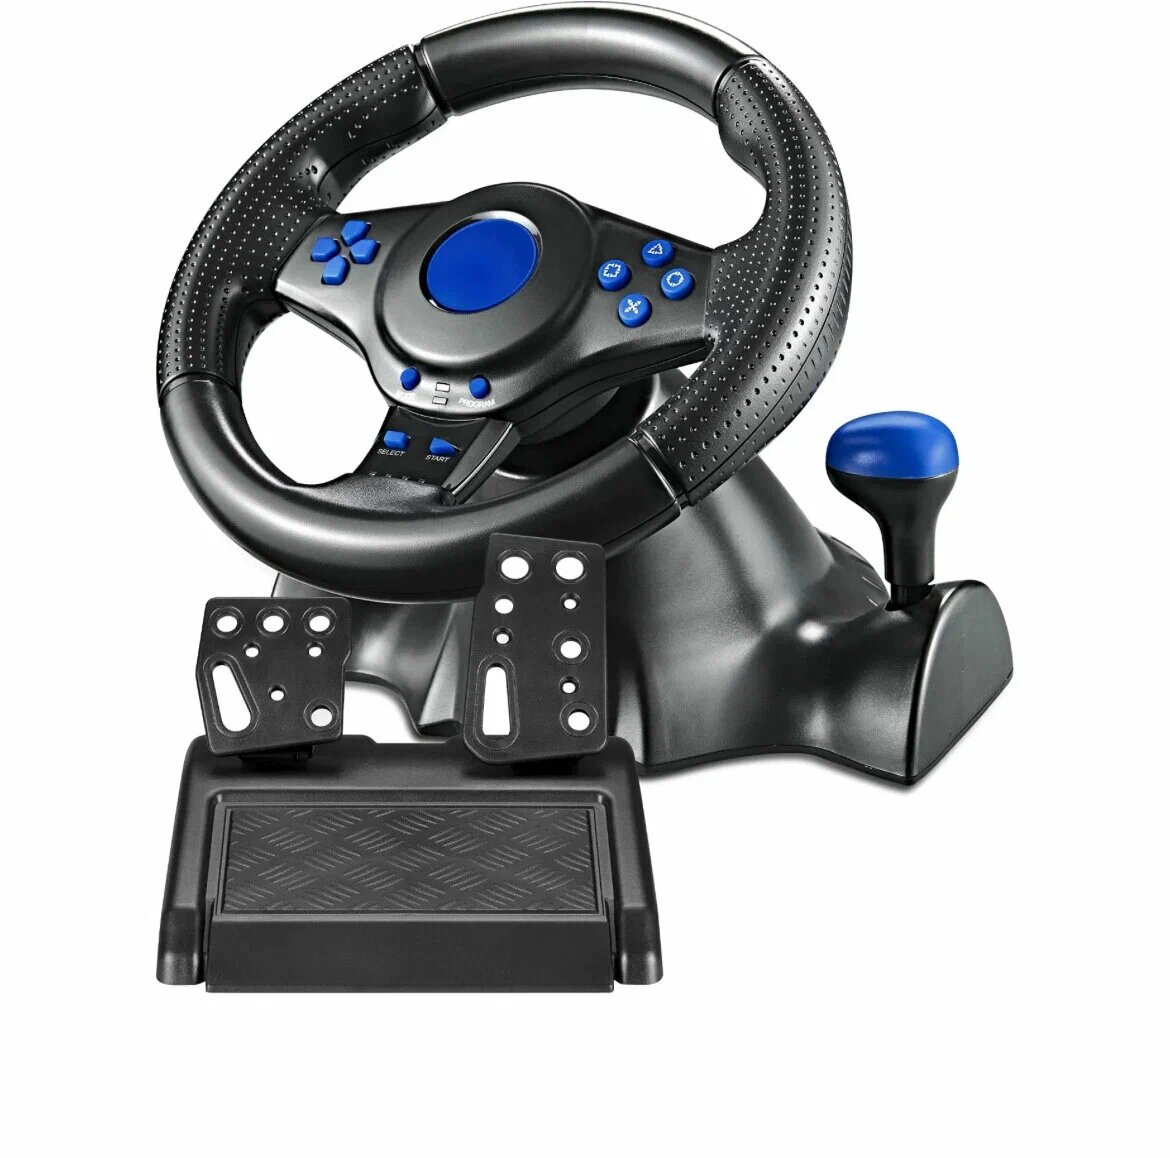 Игровой руль GT-V 7 для компьютера , ПК, Xbox One, PS4, PS3, Android / Гоночный симулятор вождения с педалями и рулём